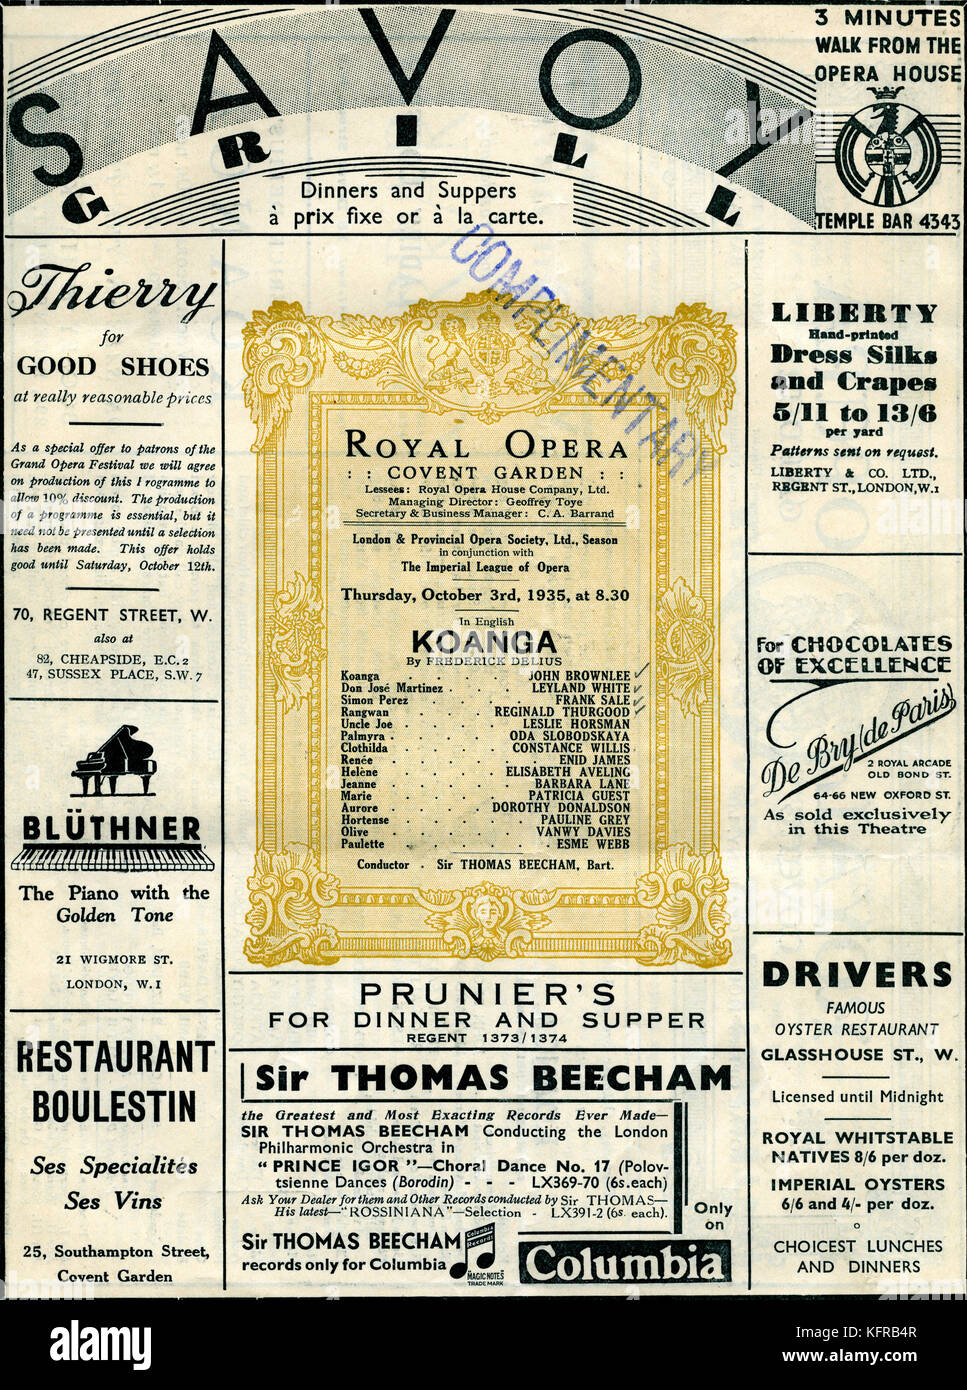 Koanga von federick Delius-Programm. Royal Opera House, Covent Garden, London, für den 3. Oktober 1935. (John brownlee Titel Rolle, geleitet von Thomas Beecham.) RD-englischen Komponisten, 29. Januar 1862 - 10. Juni 1934. Stockfoto